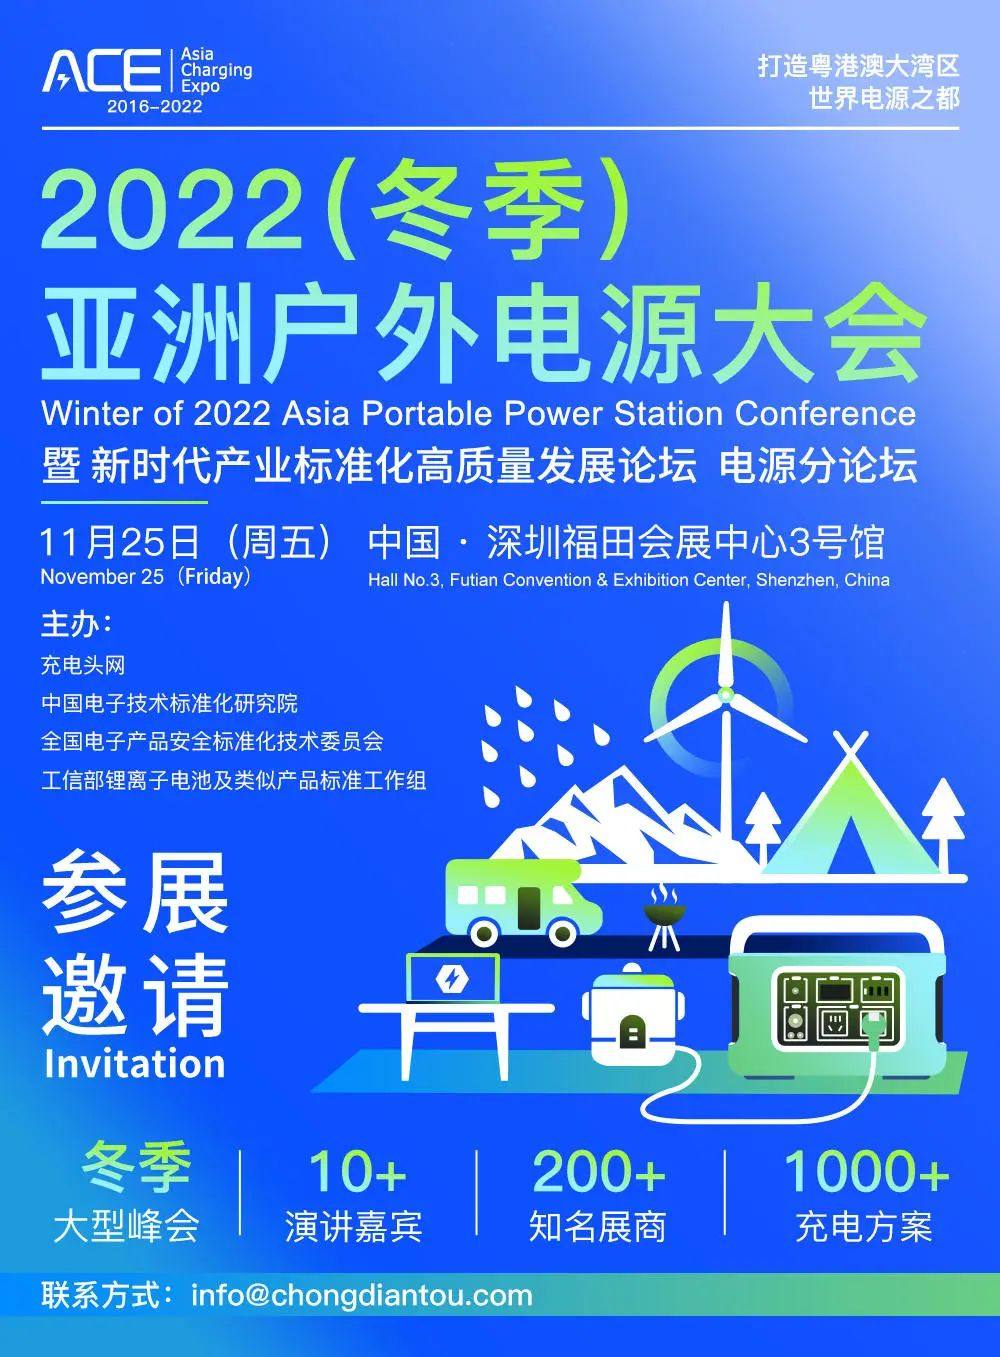 2022（冬季）亚洲户外电源大会预告-亚洲充电展